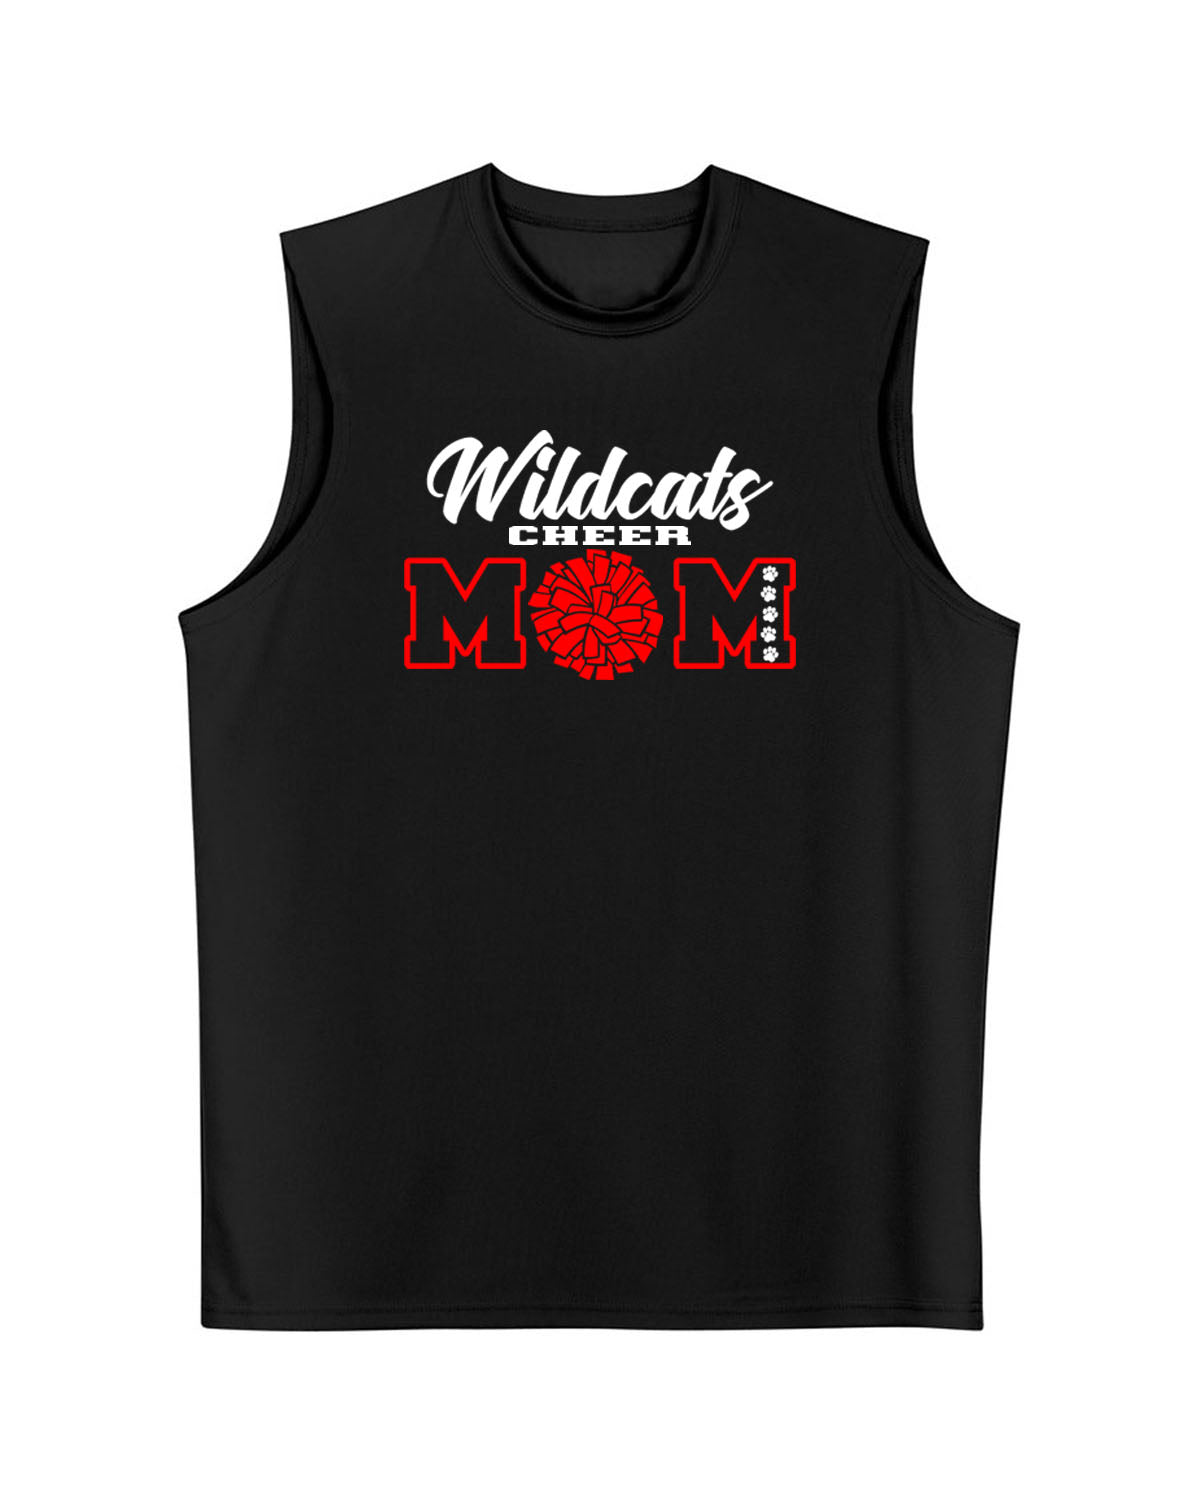 Wildcats Cheer Design 7 Men's performance Tank Top